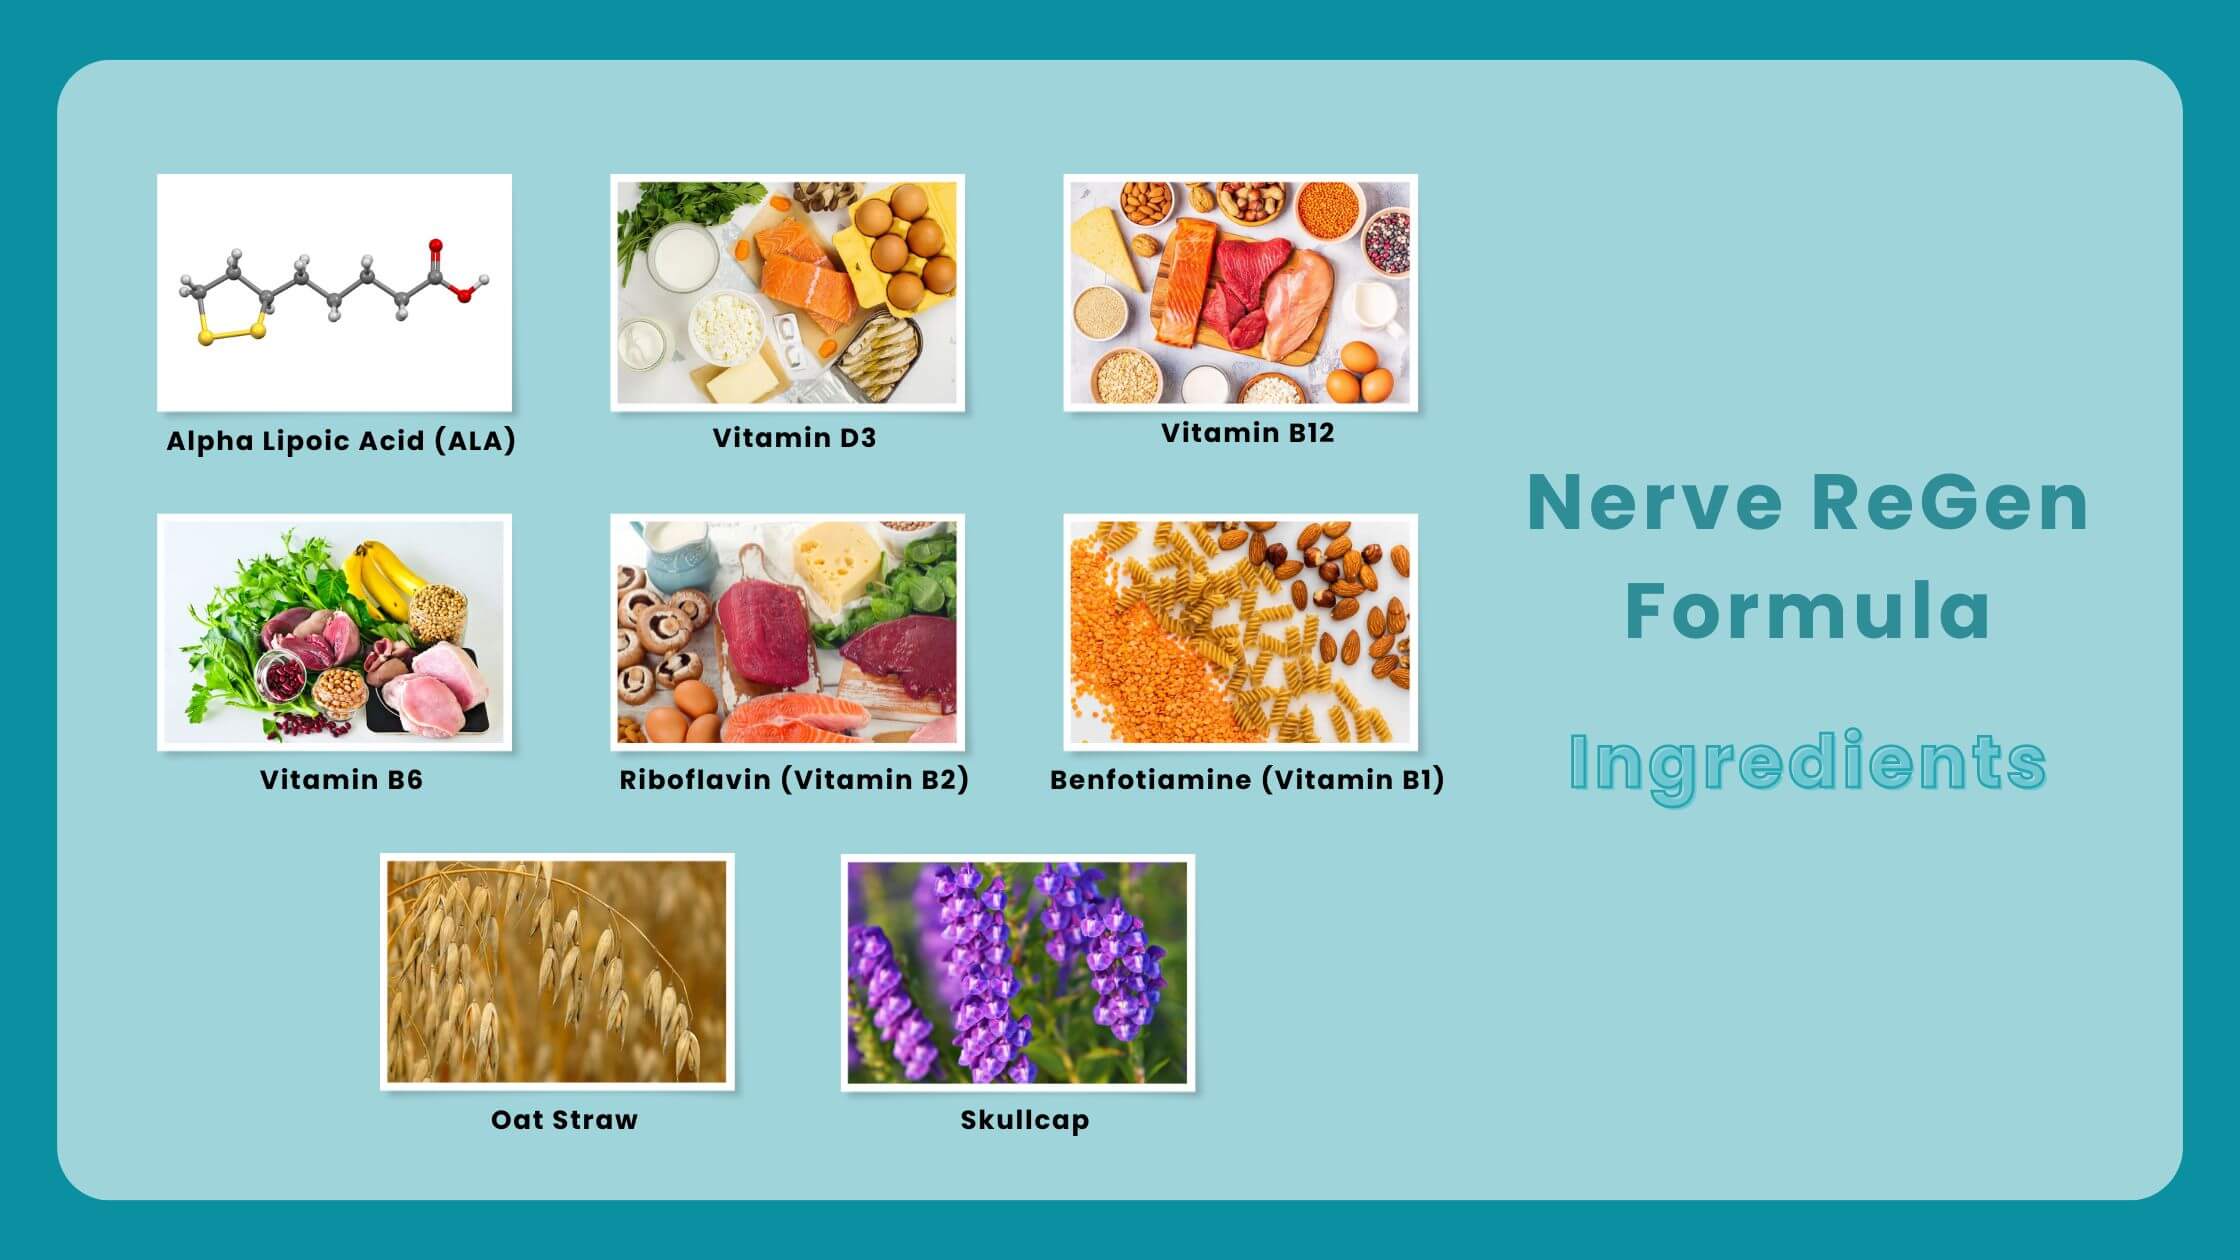 Nerve ReGen Ingredients